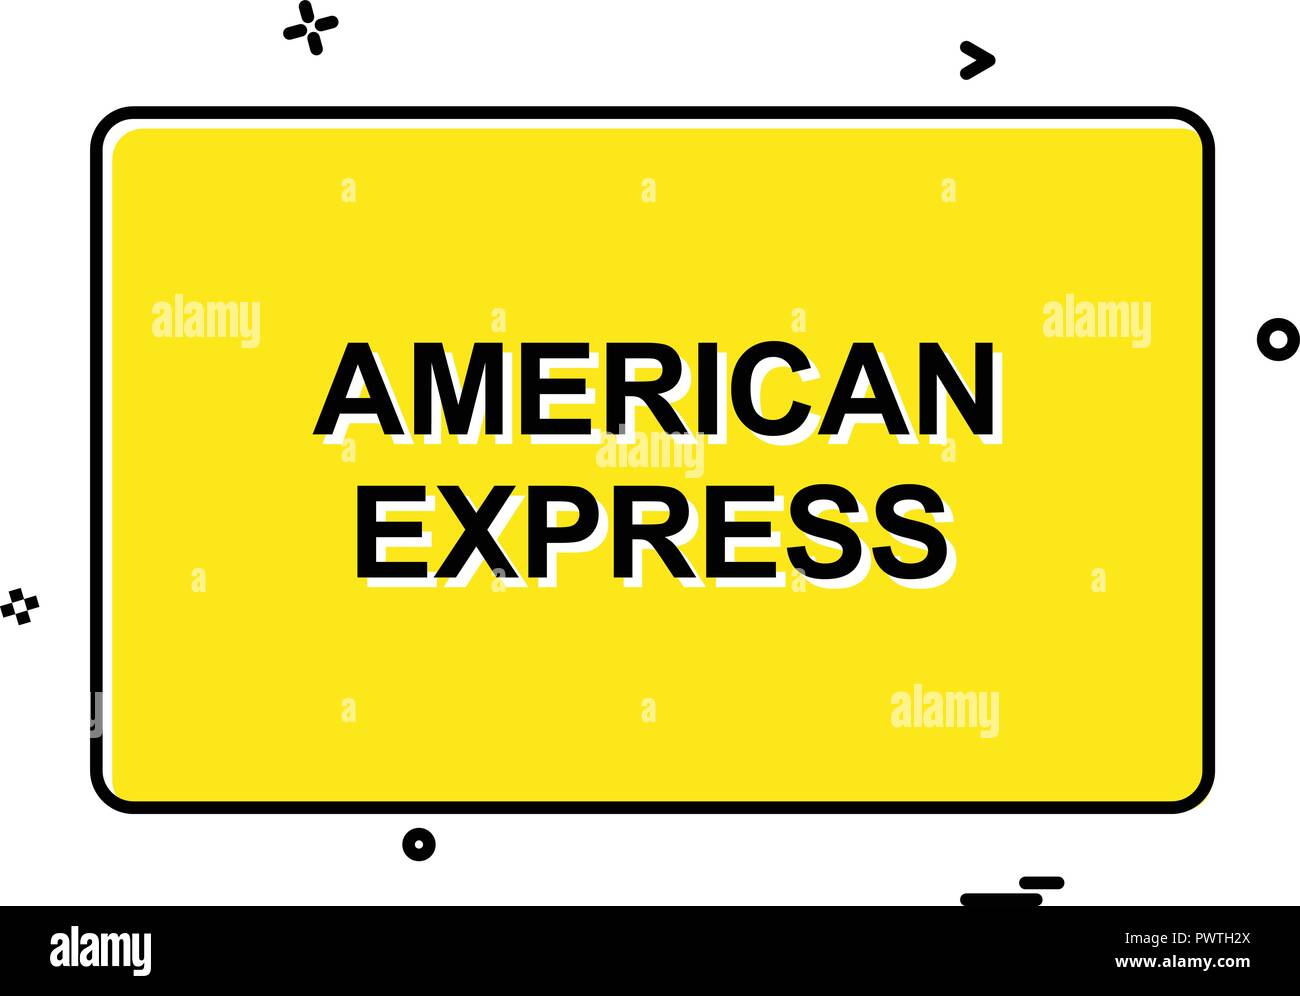 American Express card icon design vector Stock Vector